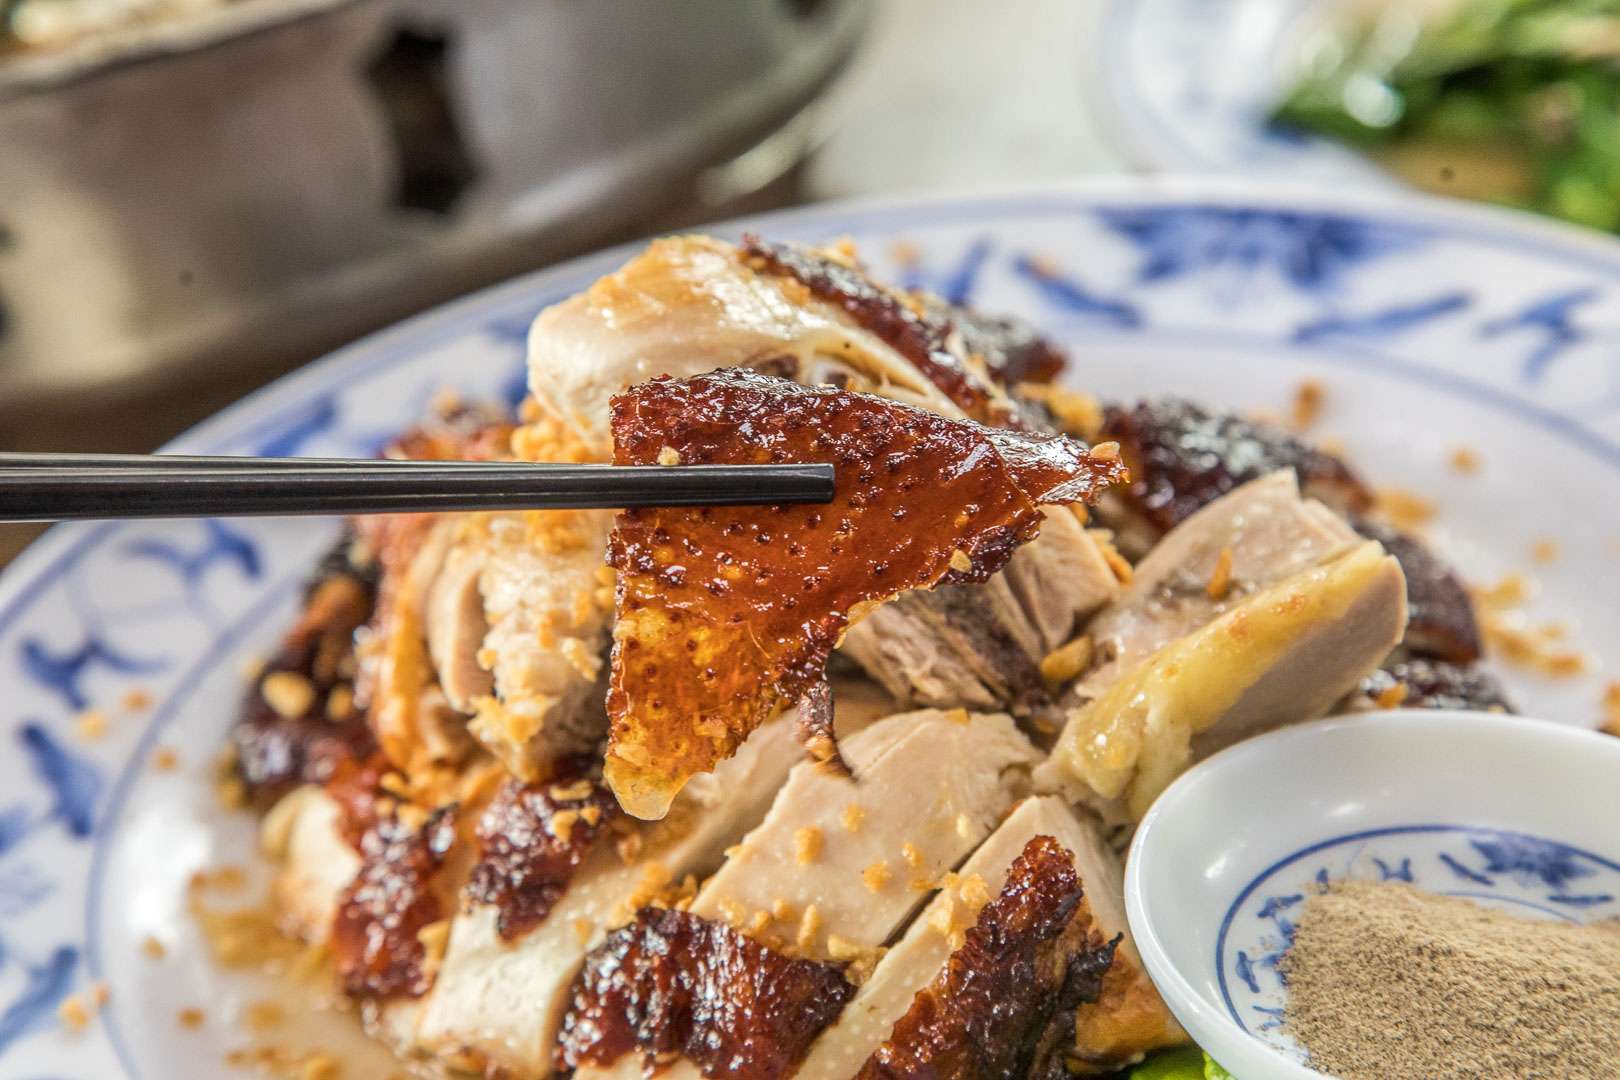 台北土雞,三峽土雞,三峽聚餐,台北白斬雞,台北脆皮雞,三峽脆皮雞,好滋味土雞莊,三峽好滋味土雞莊,三峽美食